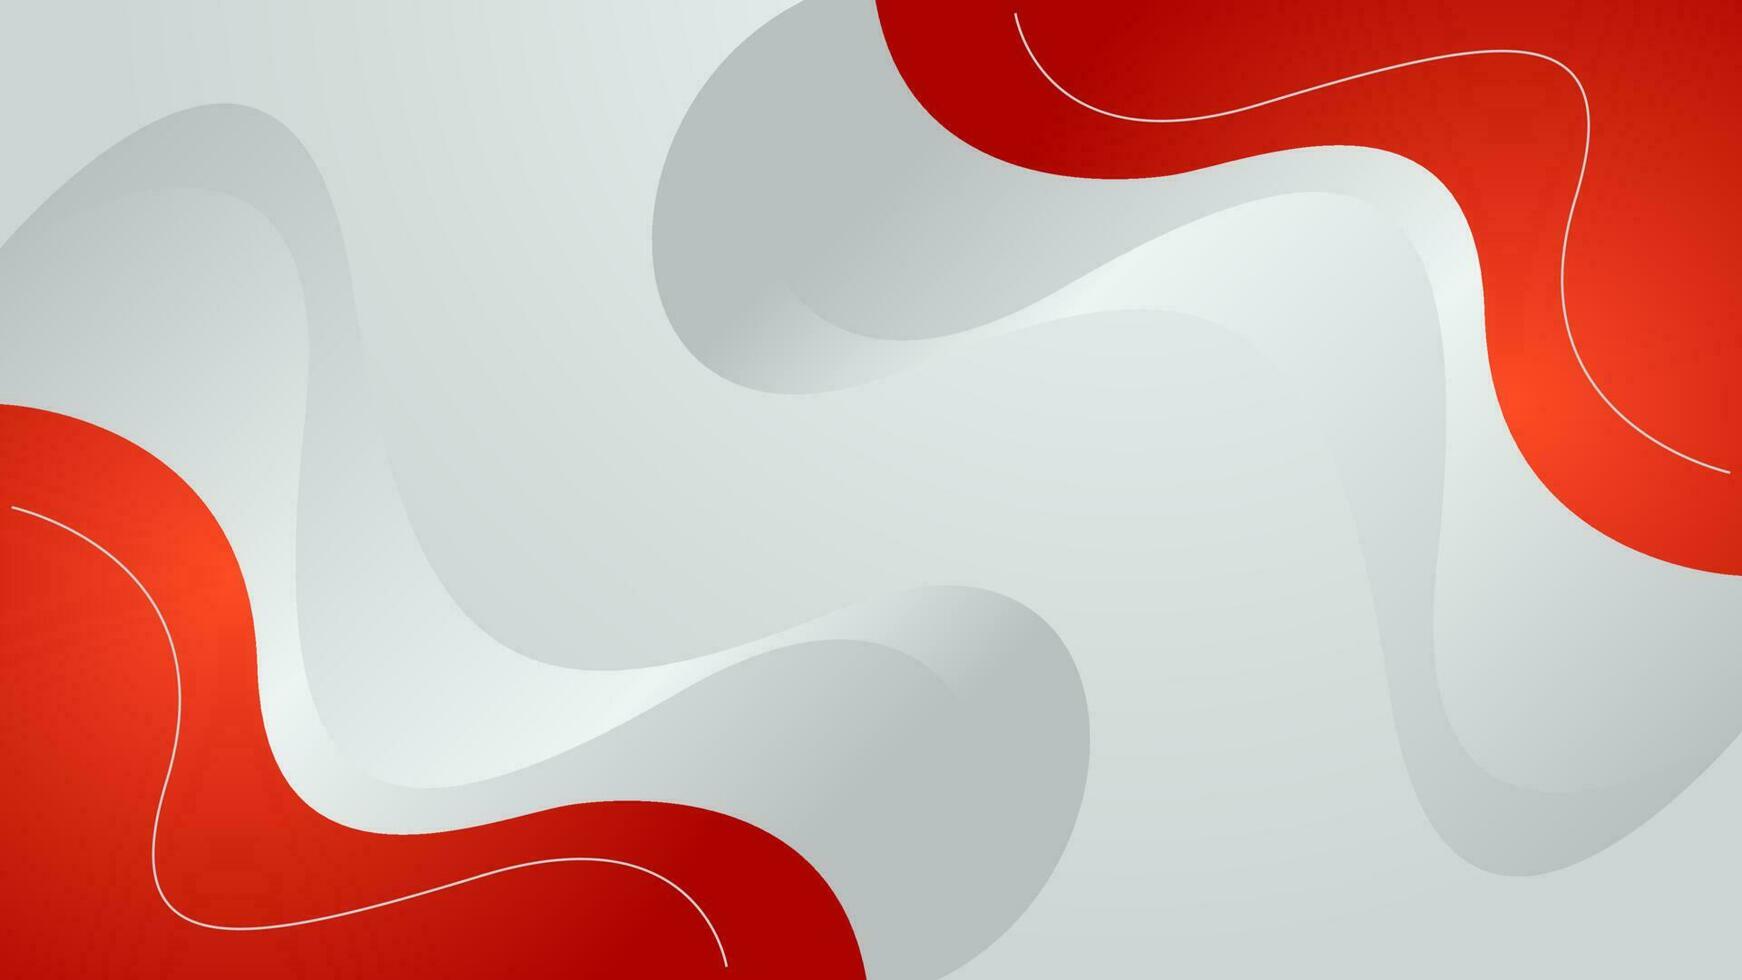 curva vermelha abstrata sobre fundo branco. ilustração vetorial vetor